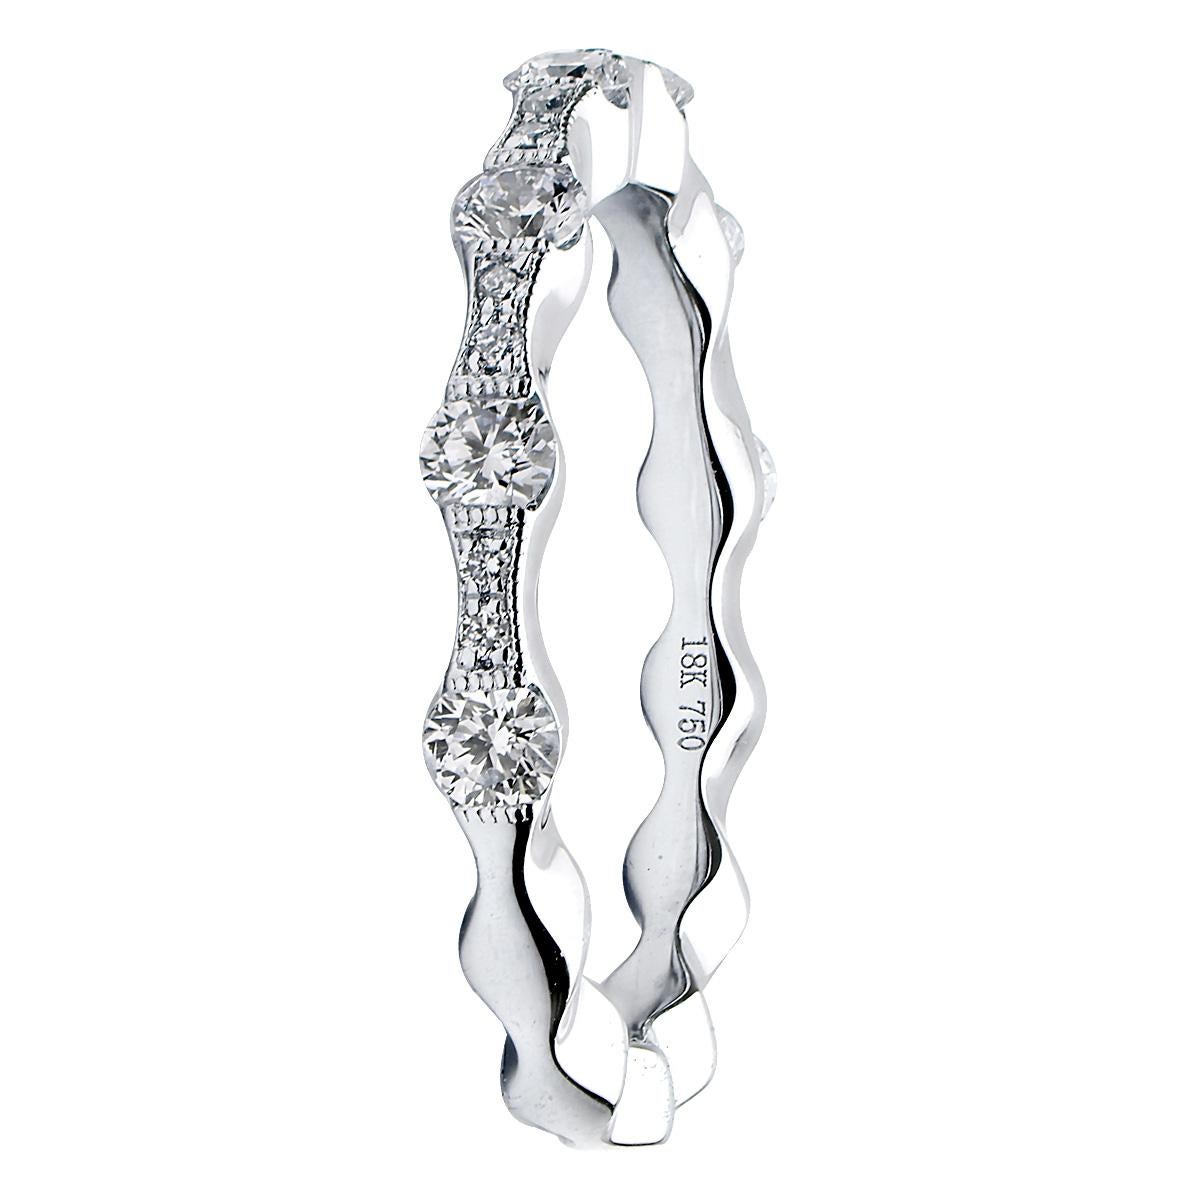 Ce magnifique bracelet en diamants est composé de deux tailles de diamants de couleur VS2, G pour créer son magnifique design. Deux diamants plus petits sont suivis d'un diamant plus grand pour donner l'apparence d'une vague autour de l'anneau. Il y